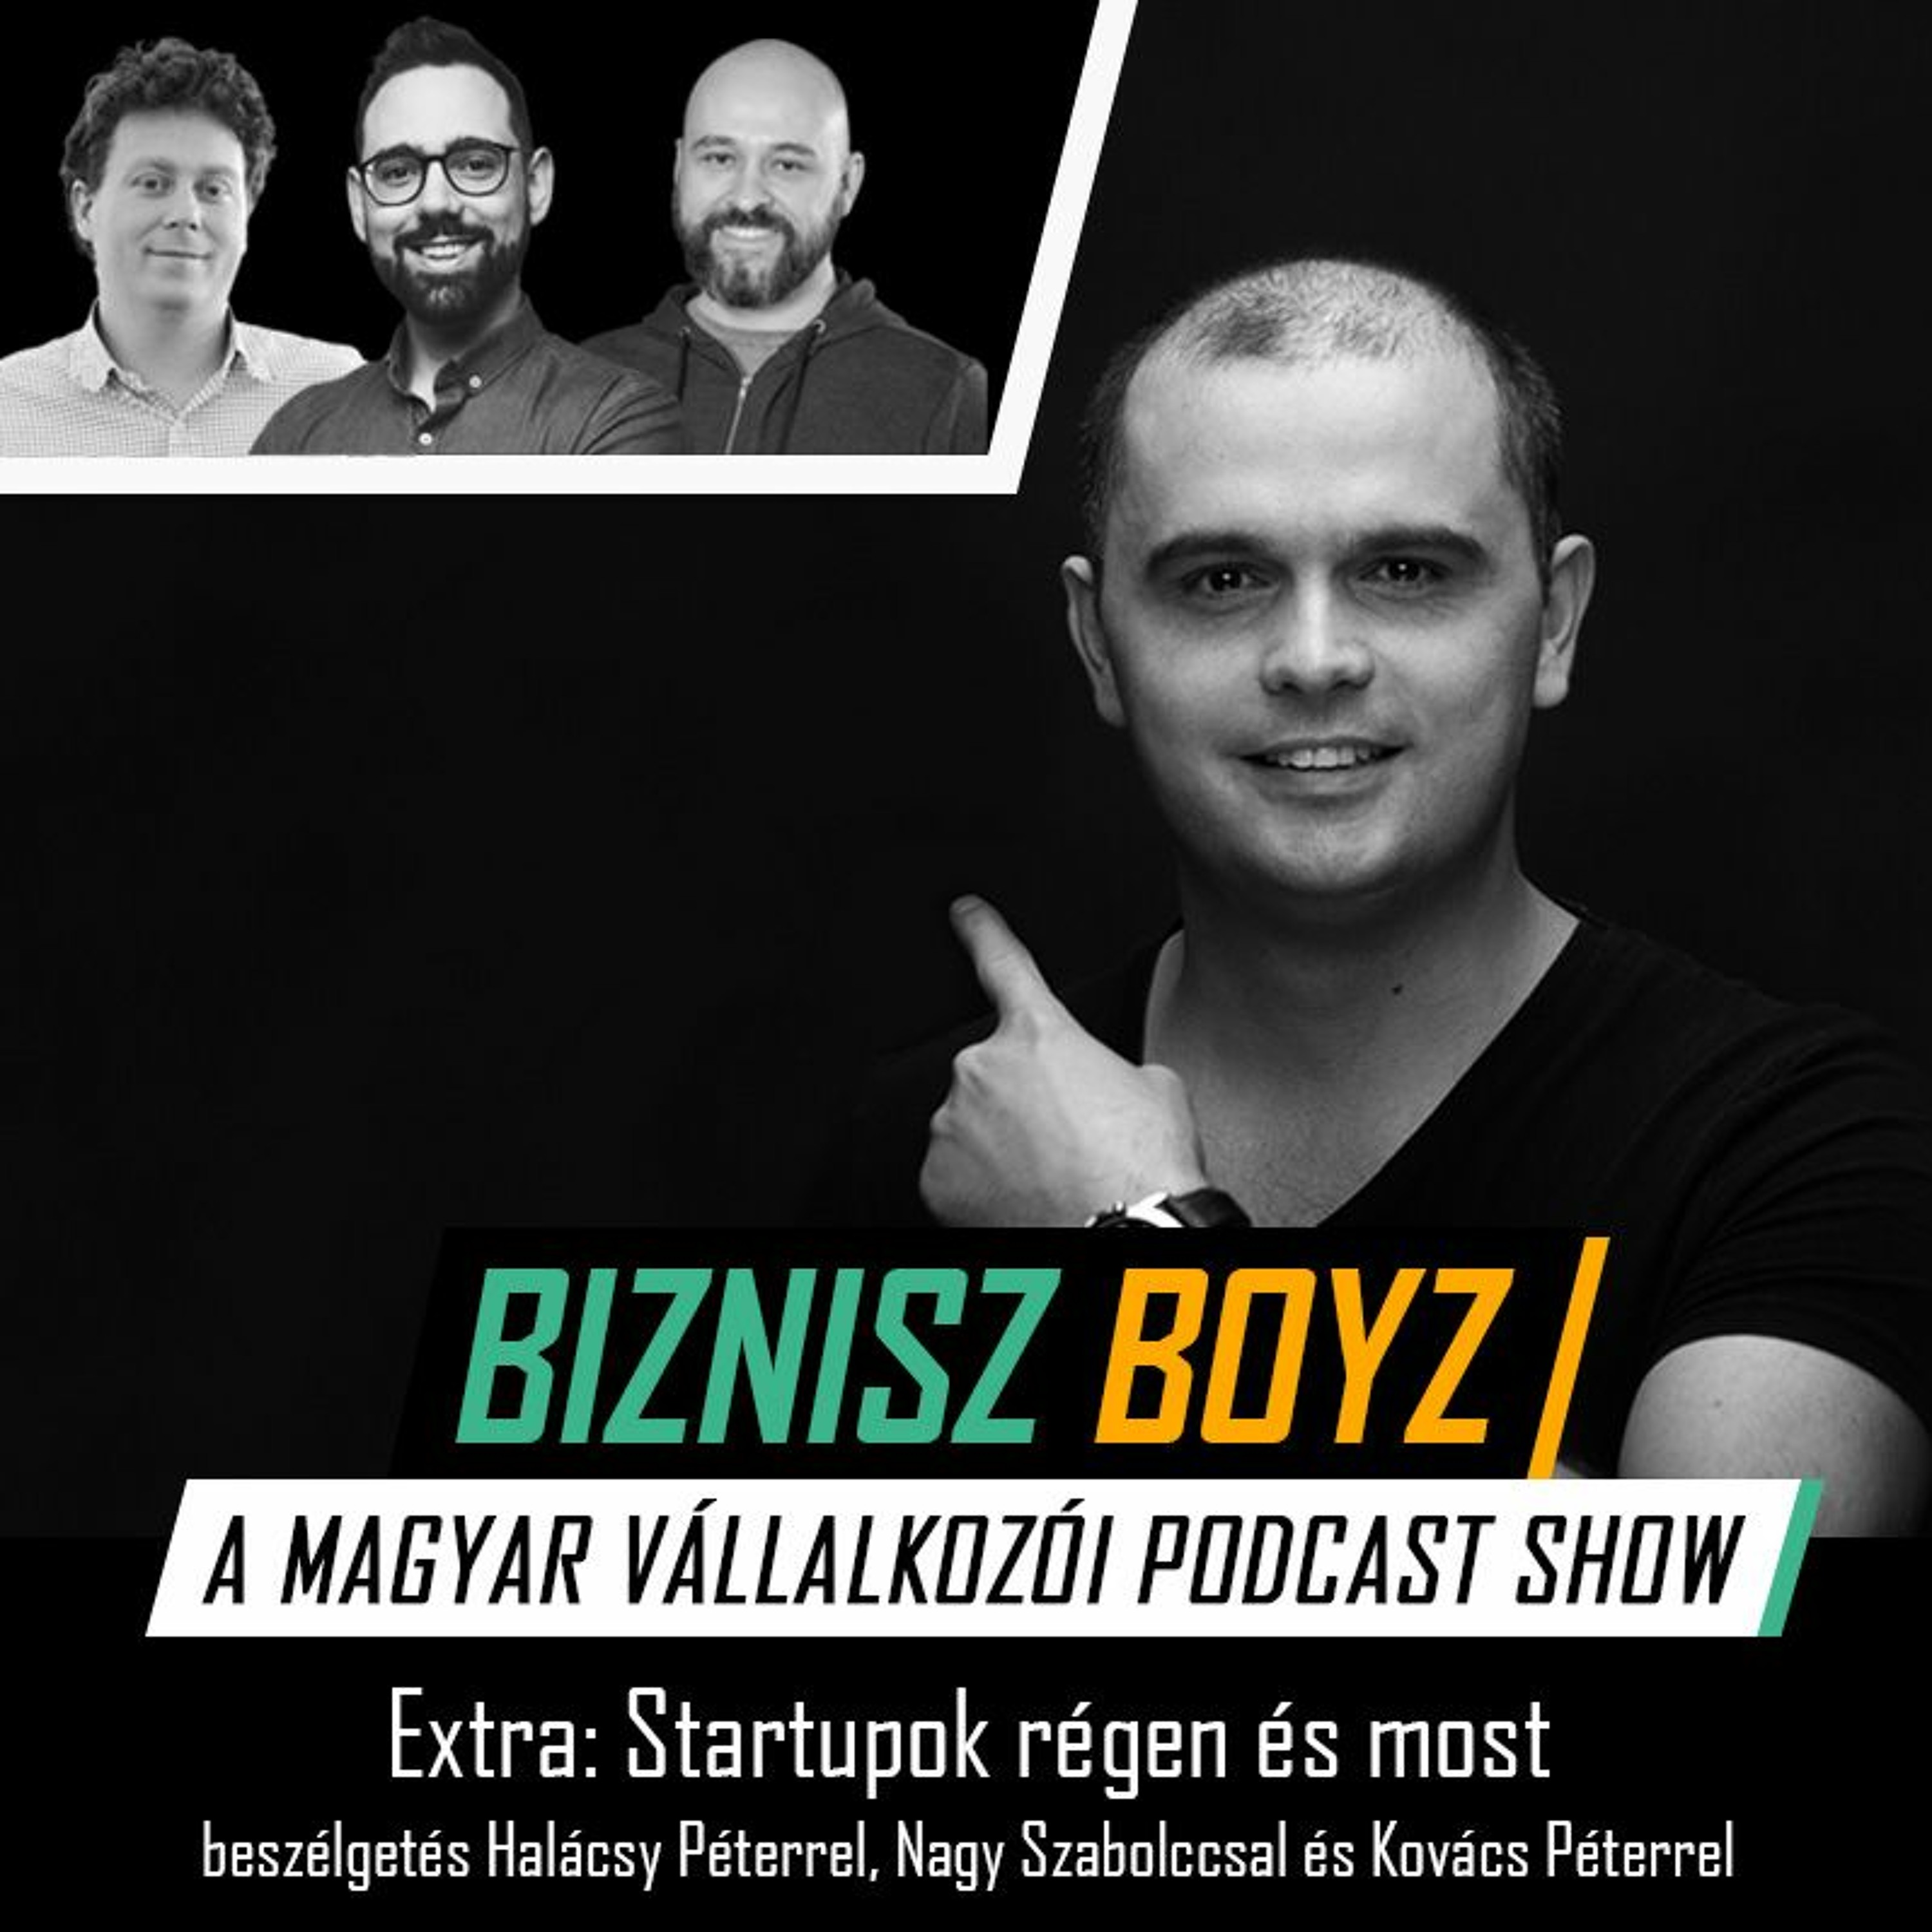 Extra: Startupok régen és most - beszélgetés Halácsy Péterrel, Nagy Szabolccsal és Kovács Péterrel